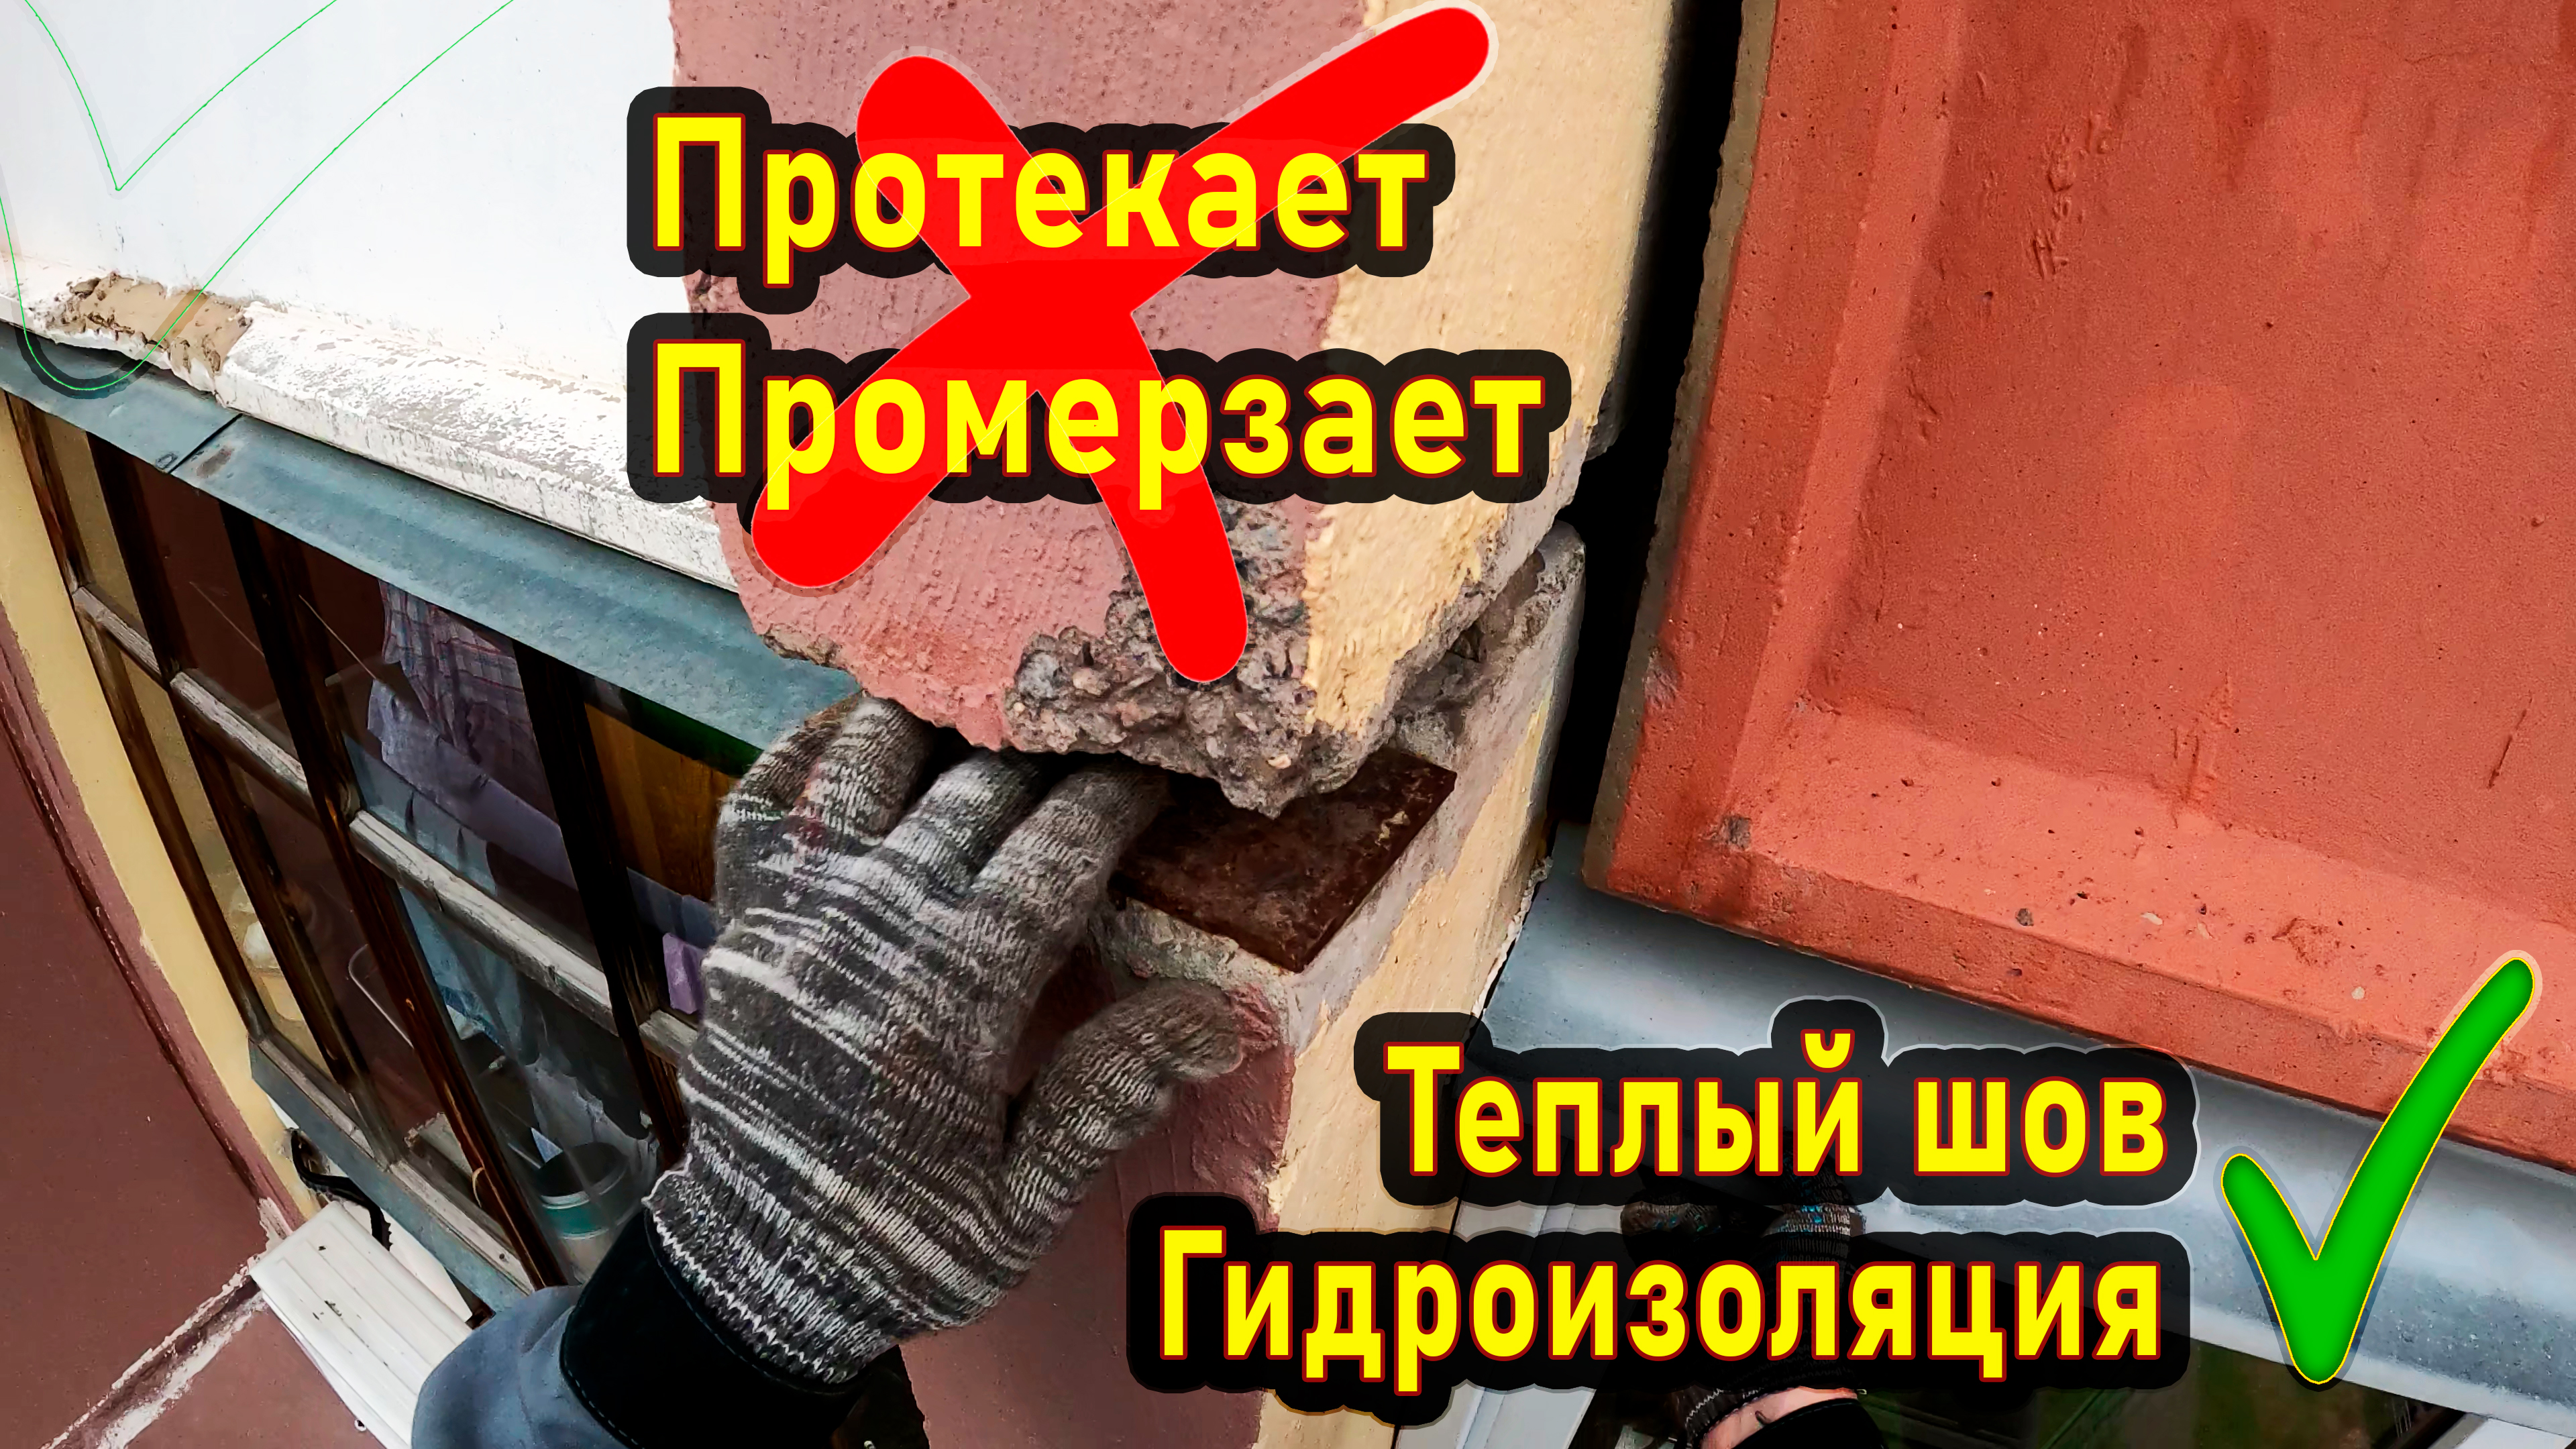 Протекает балкон. Герметизация балкона промышленными альпинистами в Москве.